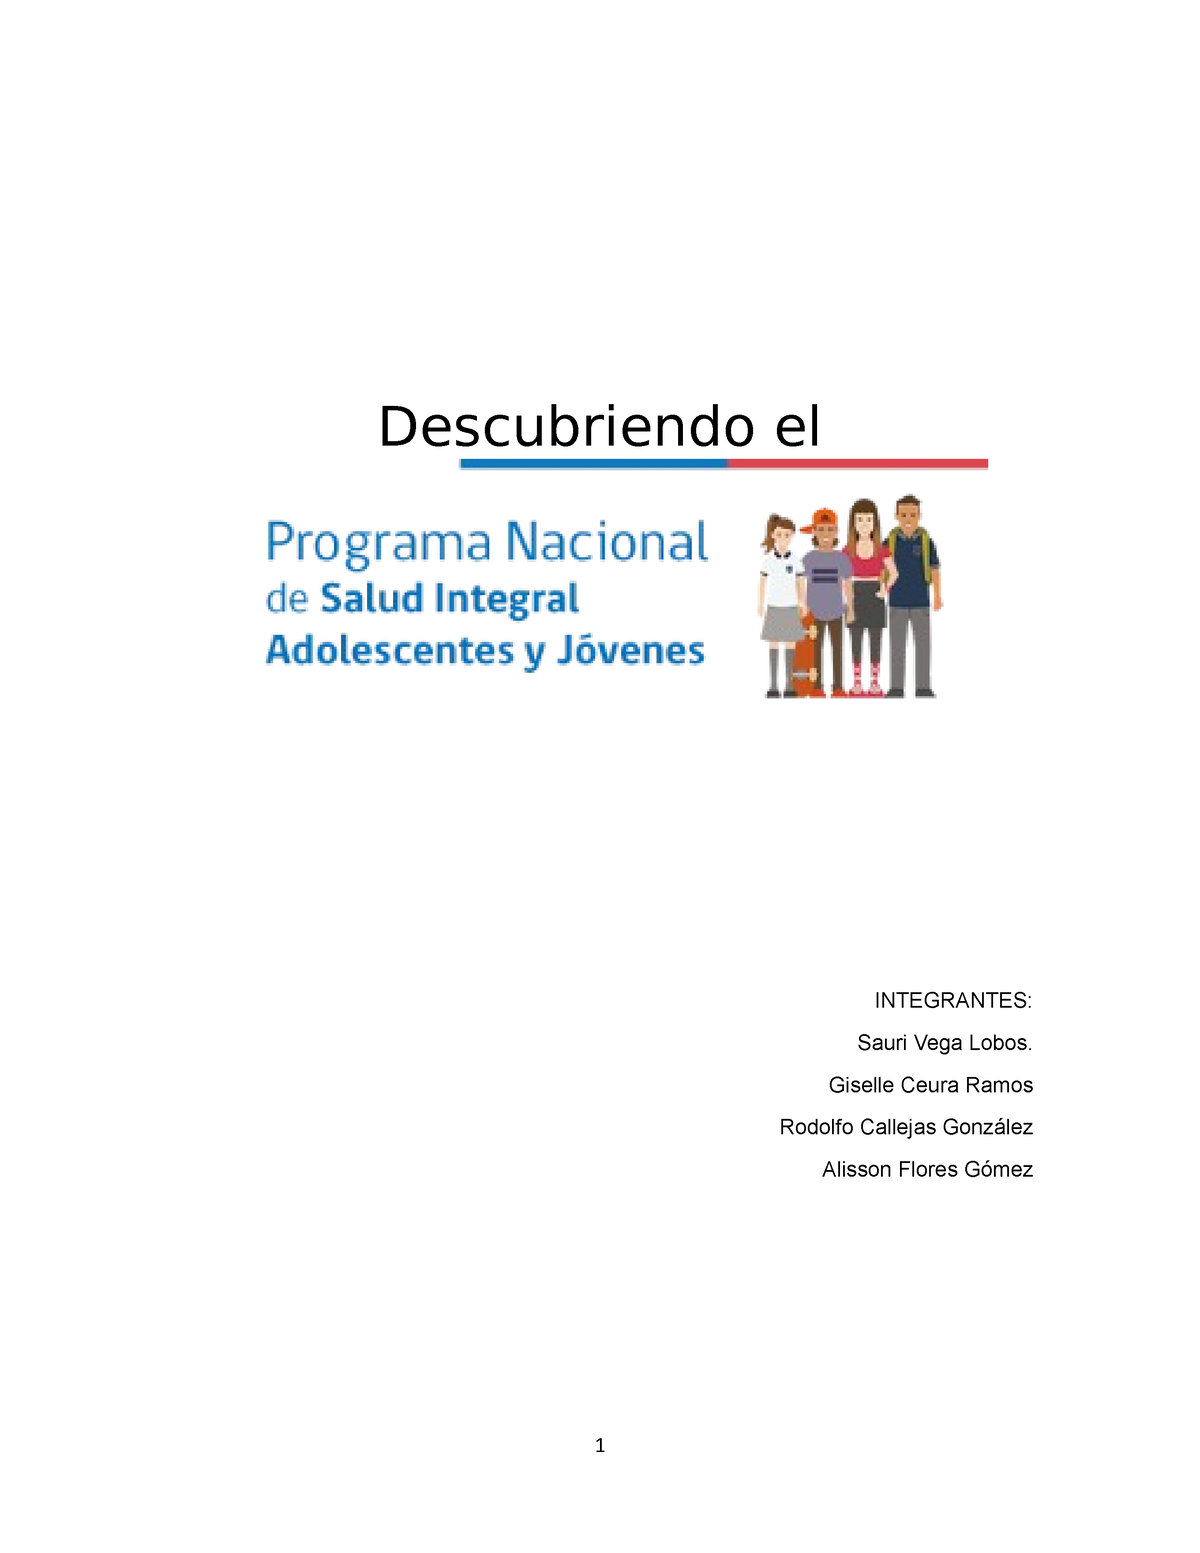 Programa De Salud Integral De Adolescentes Y Jóvenes Descubriendo El Integrantes Sauri Vega 2880